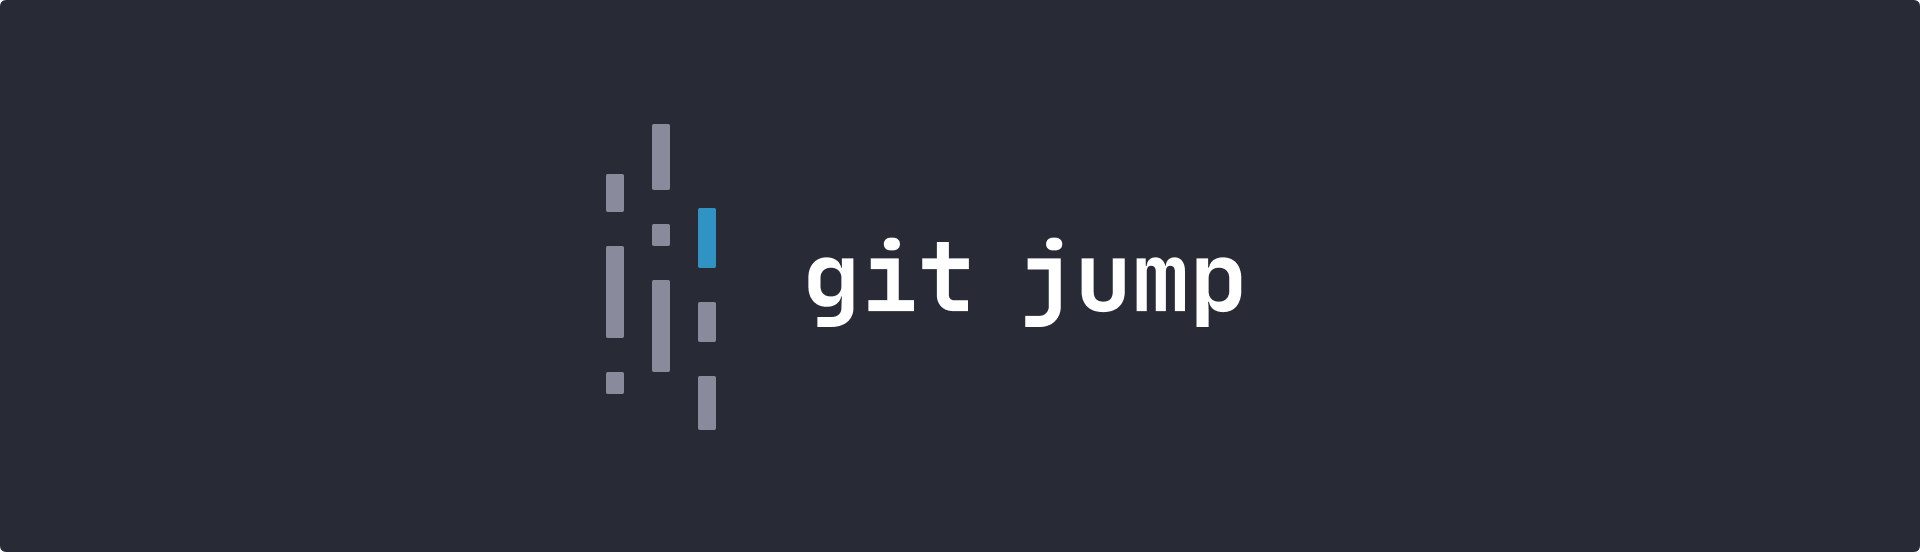 git-jump